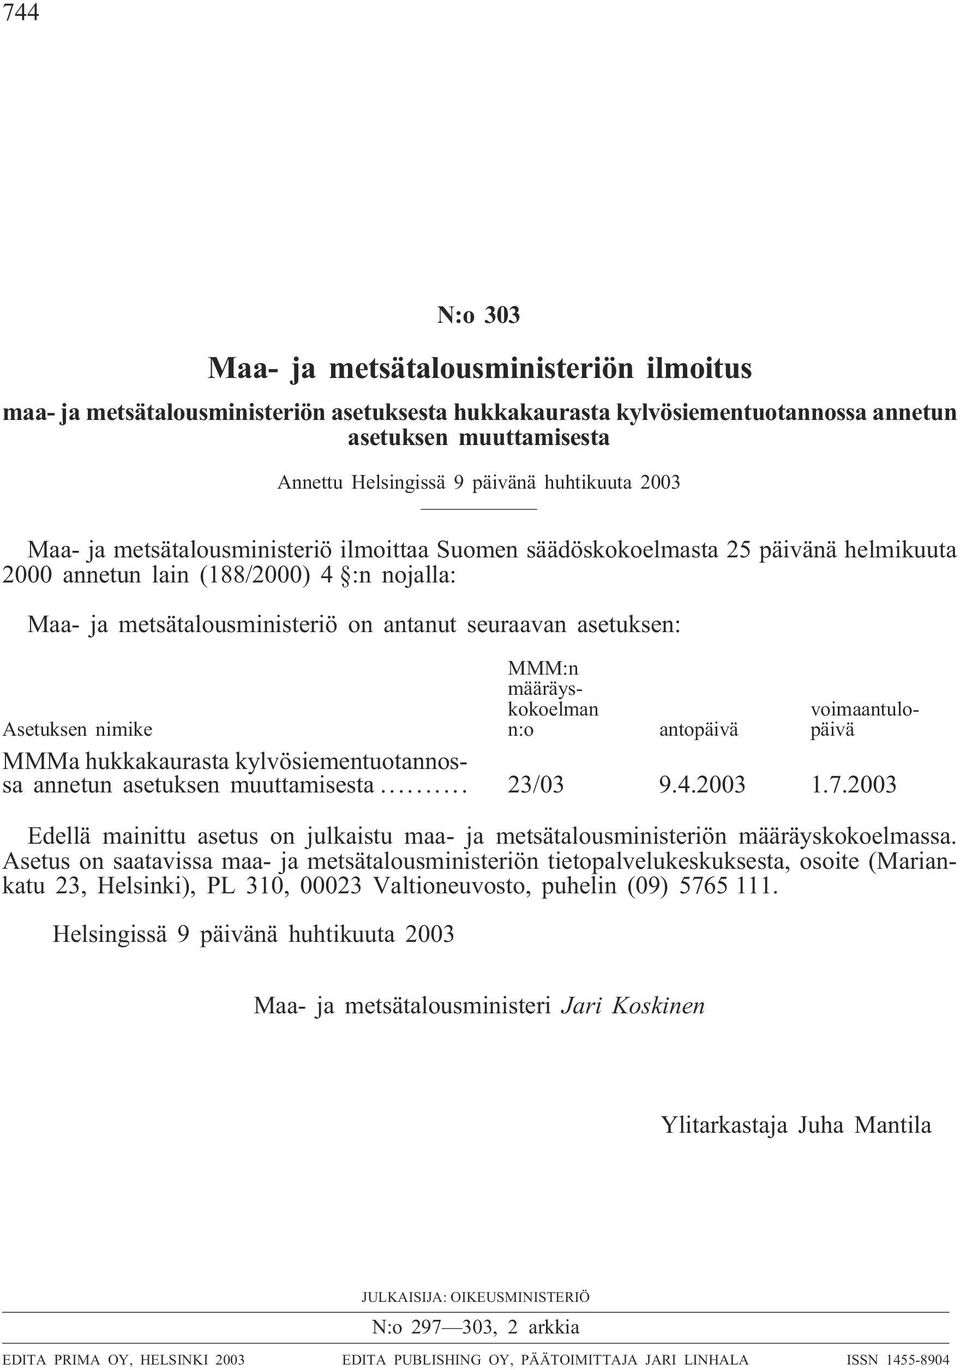 asetuksen: MMM:n määräyskokoelman n:o voimaantulopäivä Asetuksen nimike antopäivä MMMa hukkakaurasta kylvösiementuotannossa annetun asetuksen muuttamisesta... 23/03 9.4.2003 1.7.